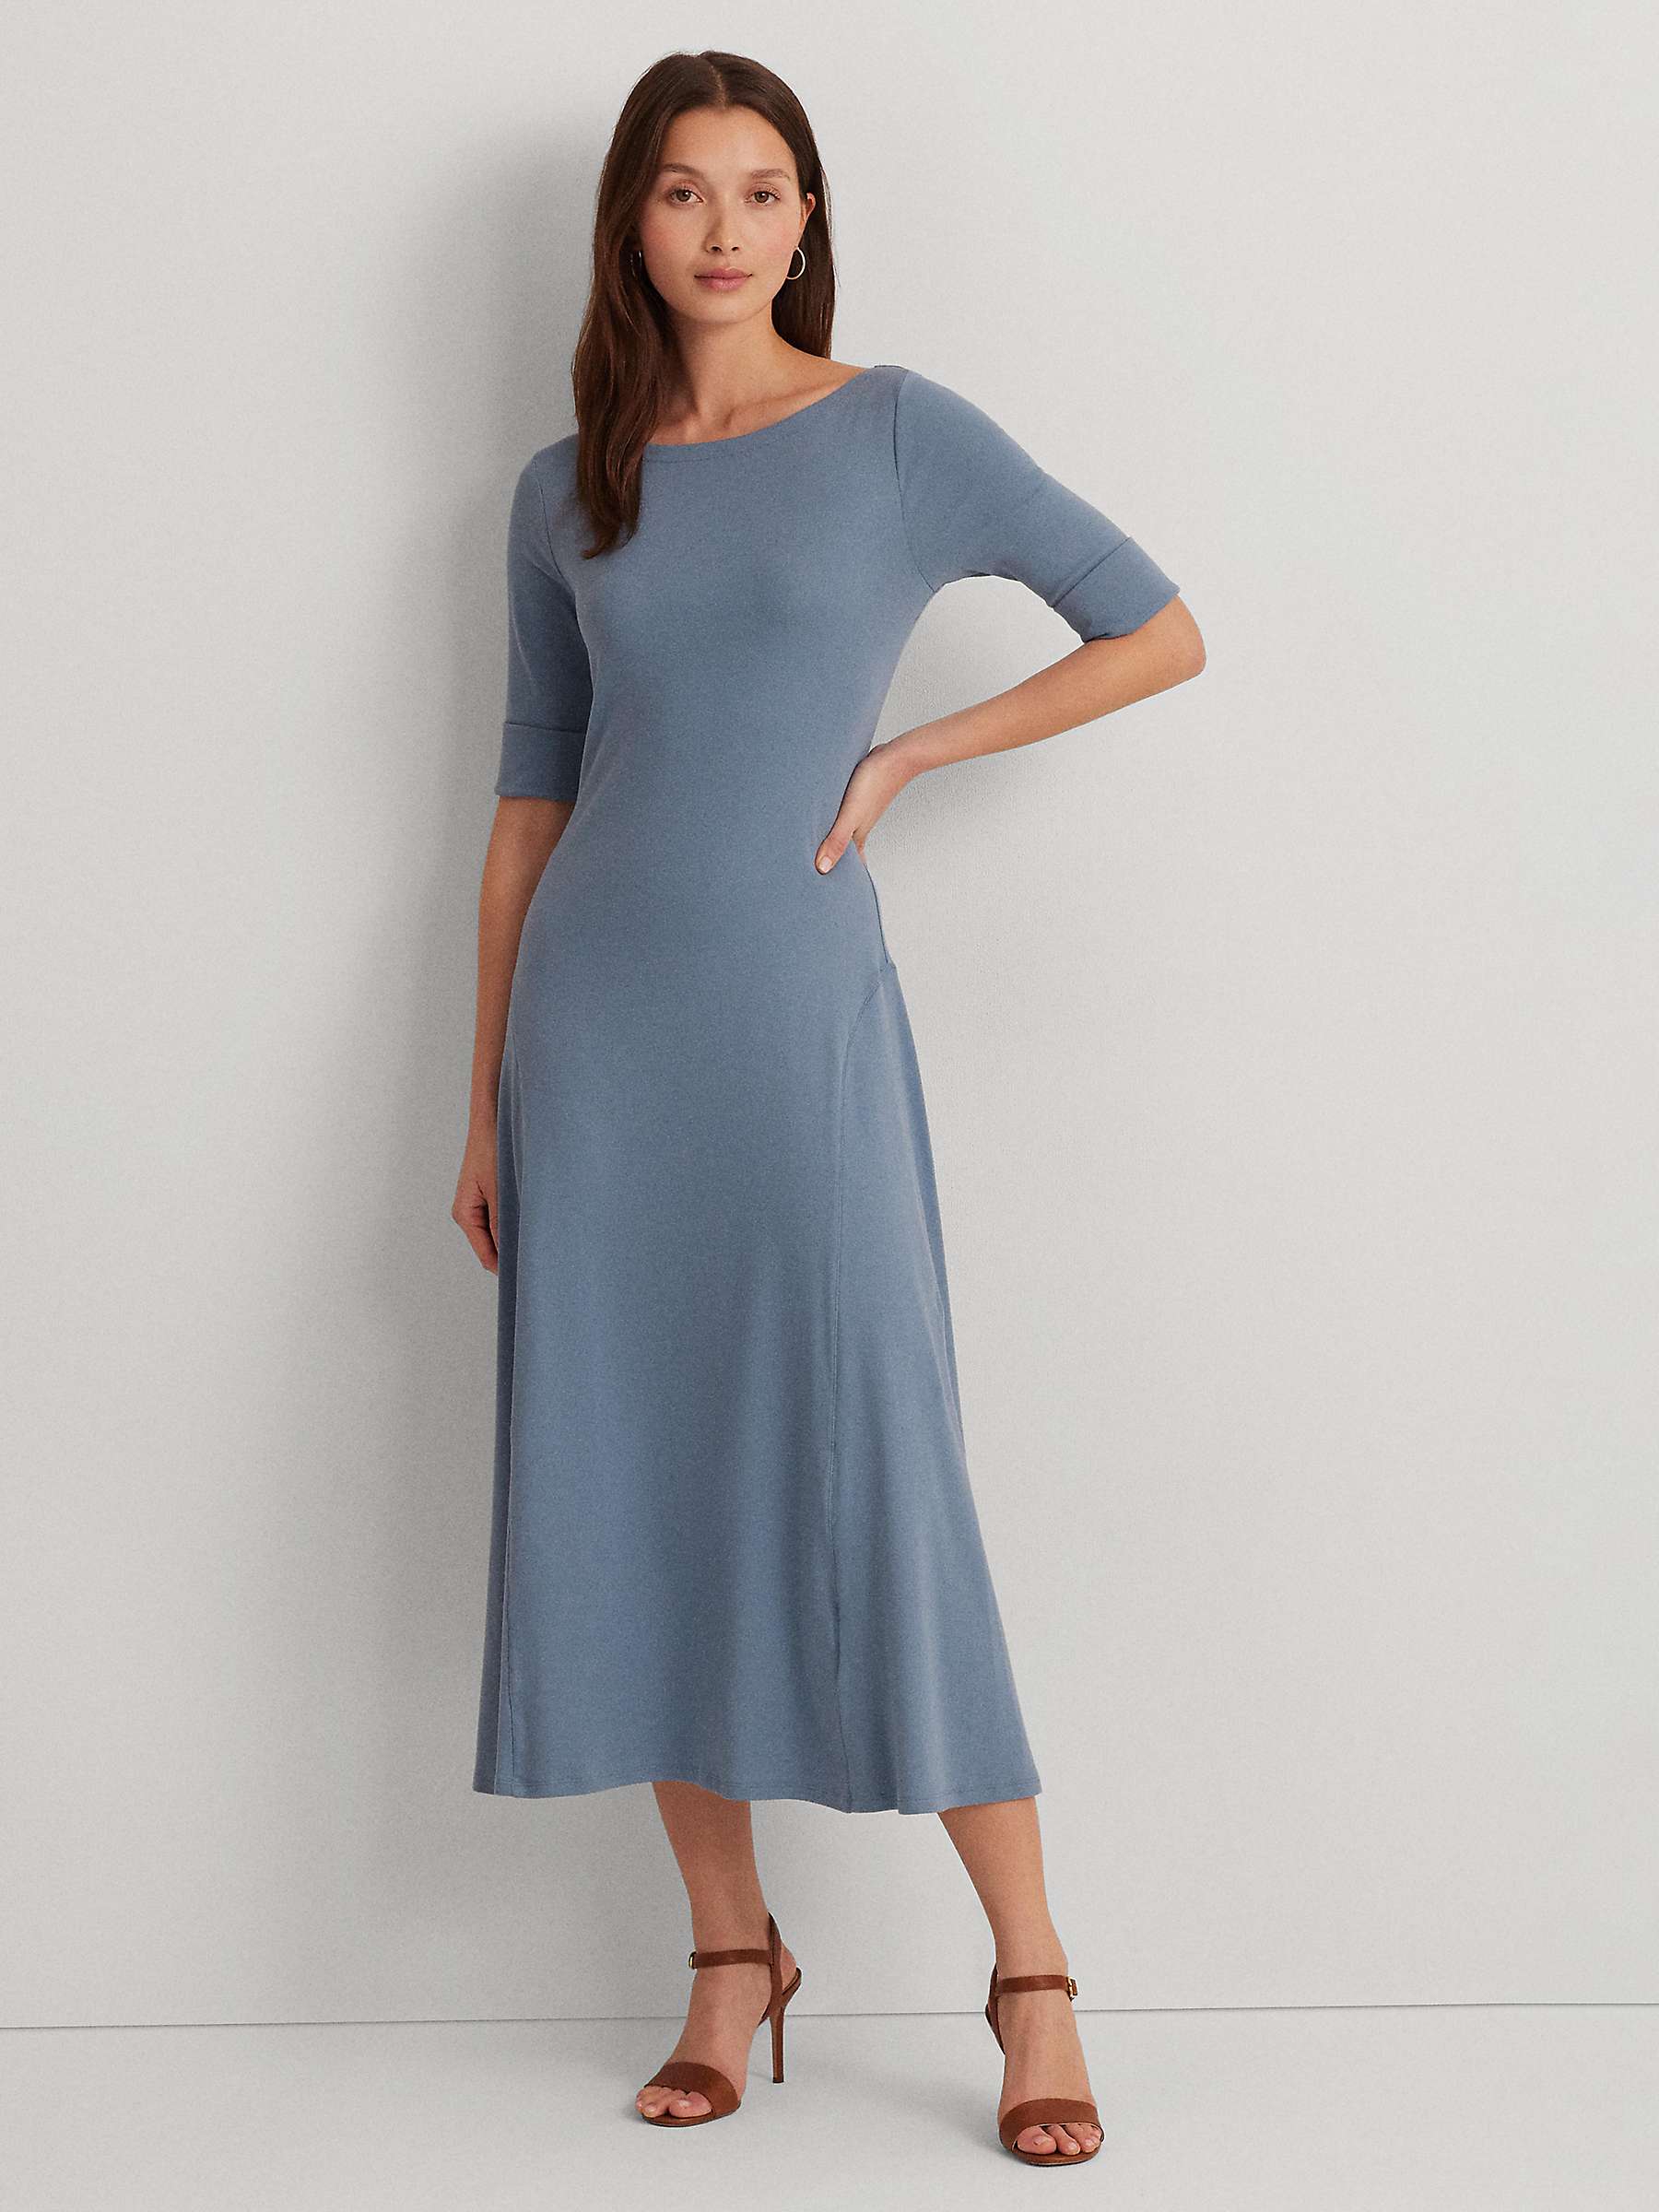 Buy Lauren Ralph Lauren Munzie Flared Dress, Light Blue Online at johnlewis.com